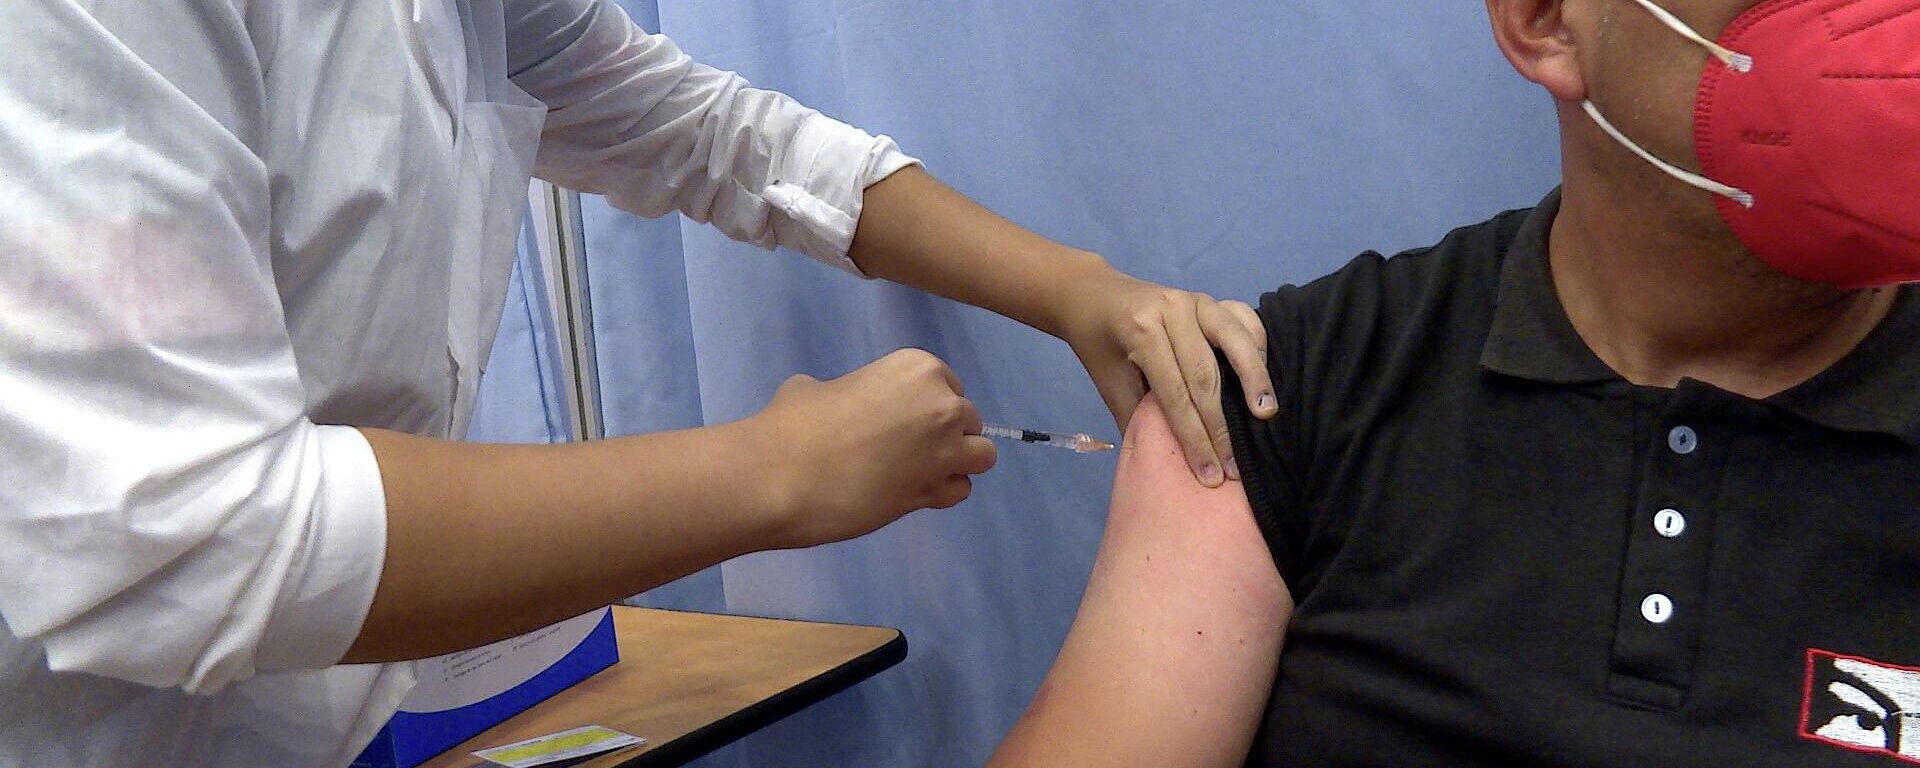 Julio Parada, empleado público, recibe la segunda dosis de una vacuna contra el COVID-19 en Caracas - Sputnik Mundo, 1920, 14.10.2021